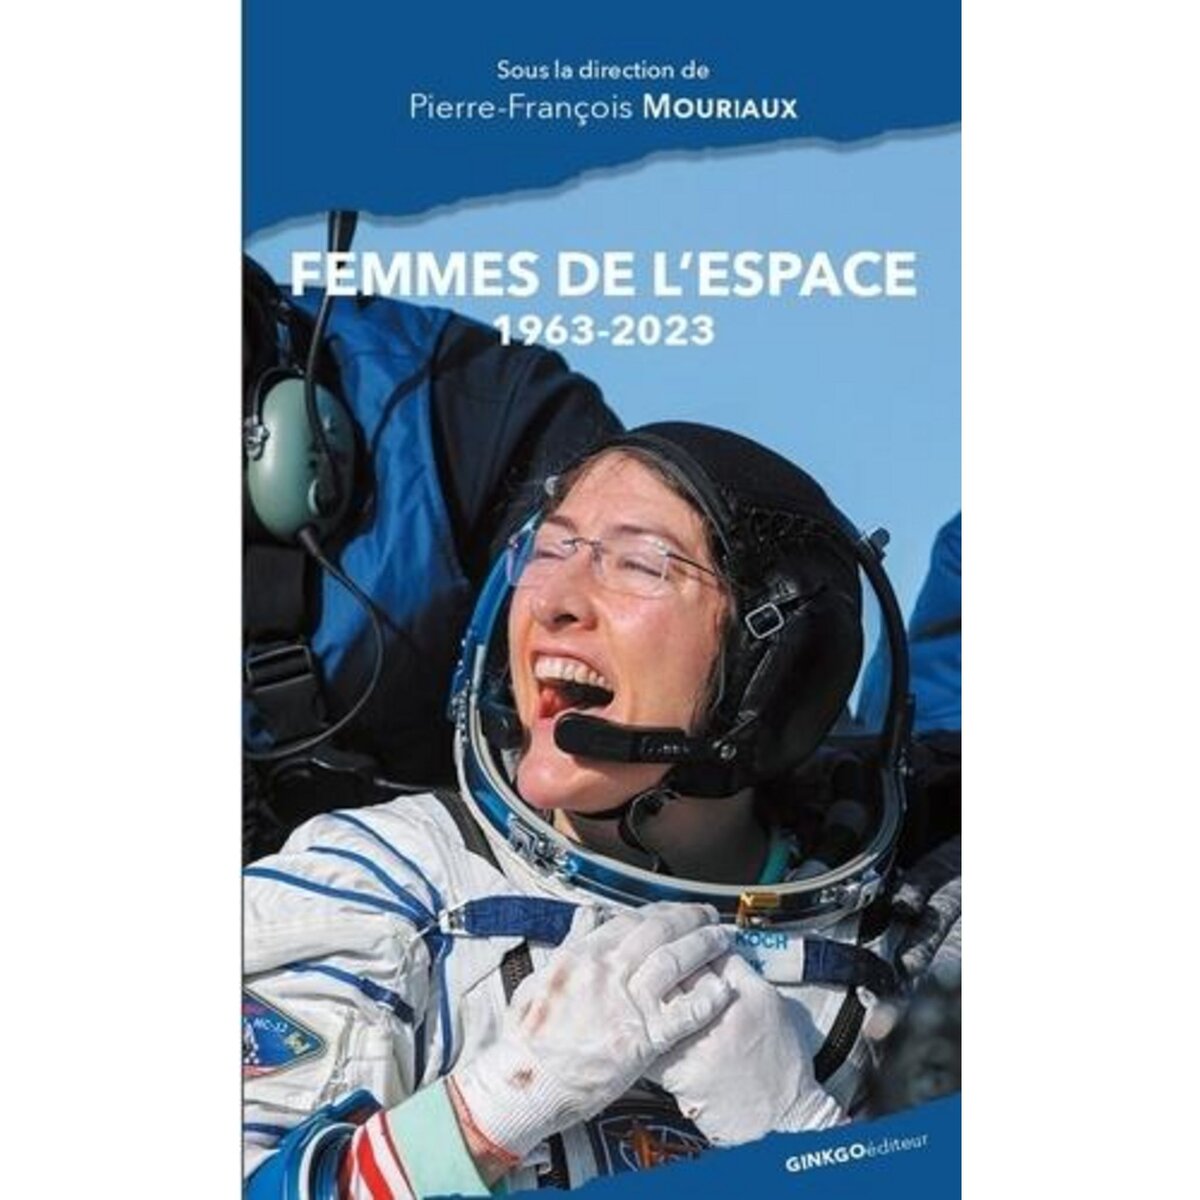  FEMMES DE L'ESPACE. 1963-2023, Mouriaux Pierre-François